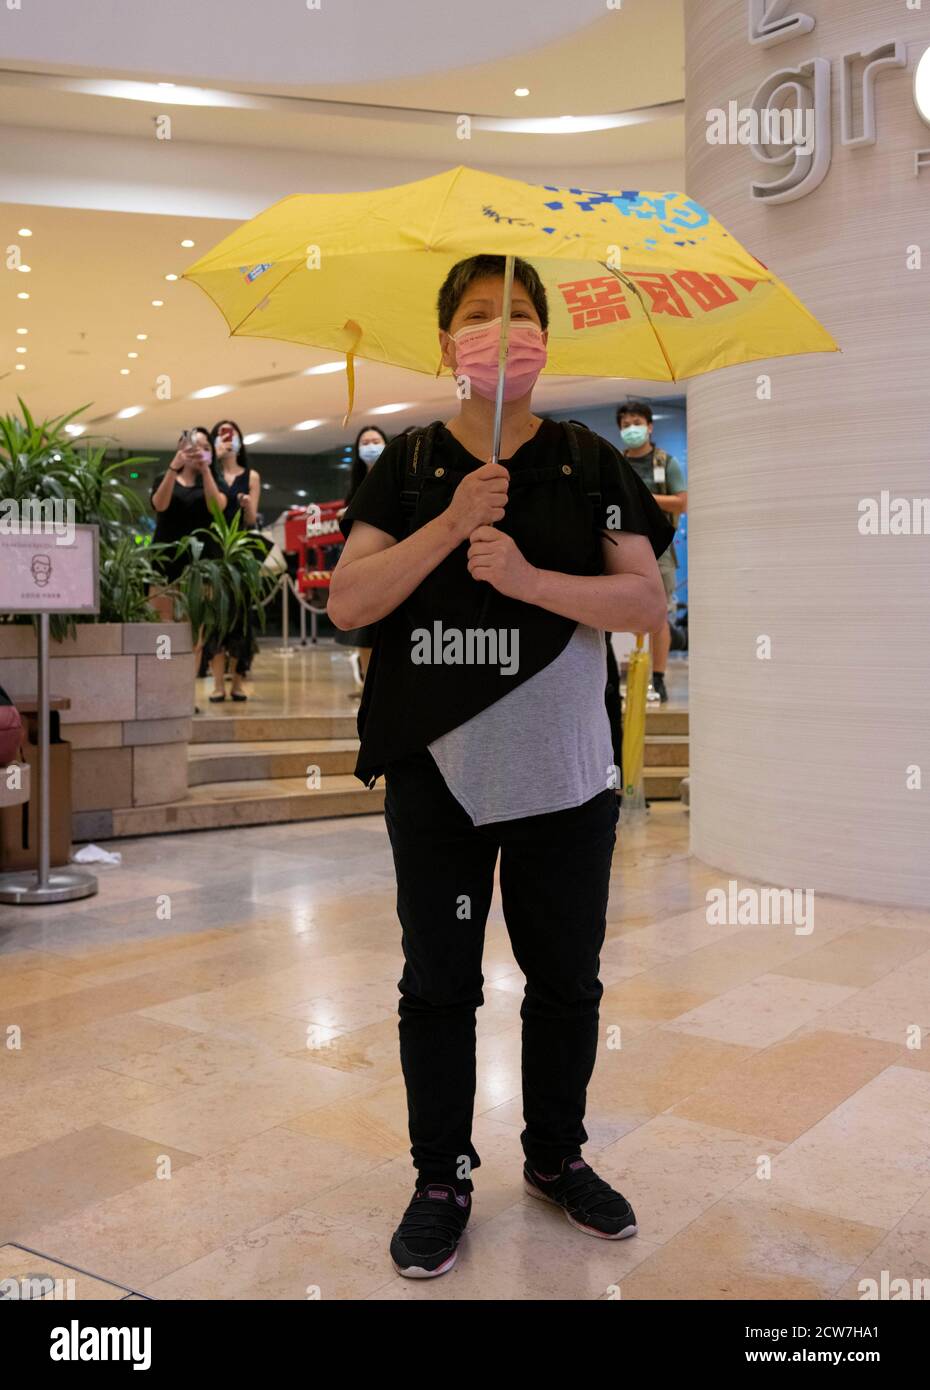 31 mai 2020, Hong Kong, Hong Kong, Chine : une dame lève un parapluie jaune et se tient en silence.a l'occasion du 6e anniversaire du mouvement des parapluies, seul un très petit nombre de personnes ont choisi de protester. L'introduction de la loi sur la sécurité nationale a créé une atmosphère de peur réduisant les activités de protestation. Ceux qui souhaitent protester se sont rassemblés dans le Pacific place Mall plutôt que par les bureaux du gouvernement à Admiralty. La police arrive et kettle presse et les acheteurs menant à des arrestations. (Image de crédit : © Jayne Russell/ZUMA Wire) Banque D'Images